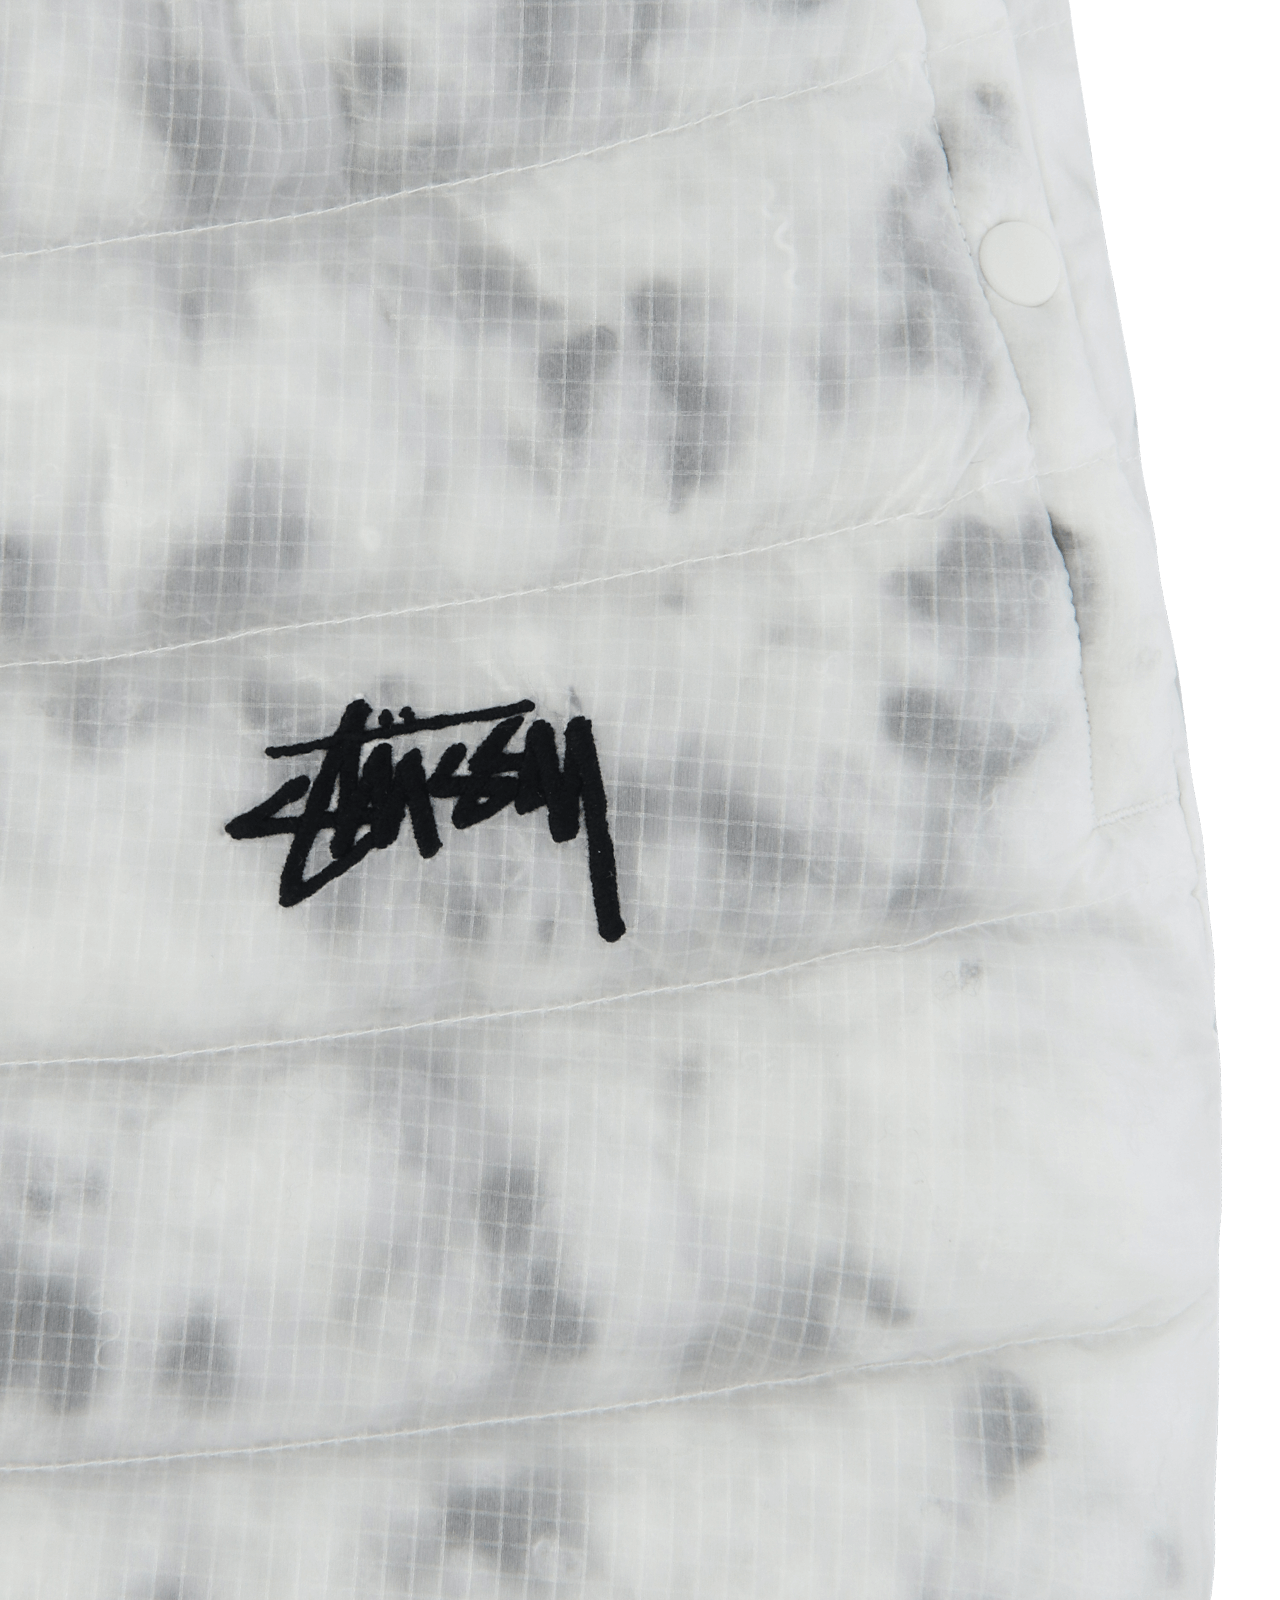 Nike x Stussy Zr Insulated White/Gorge Green Skirts Mini DC1088 100